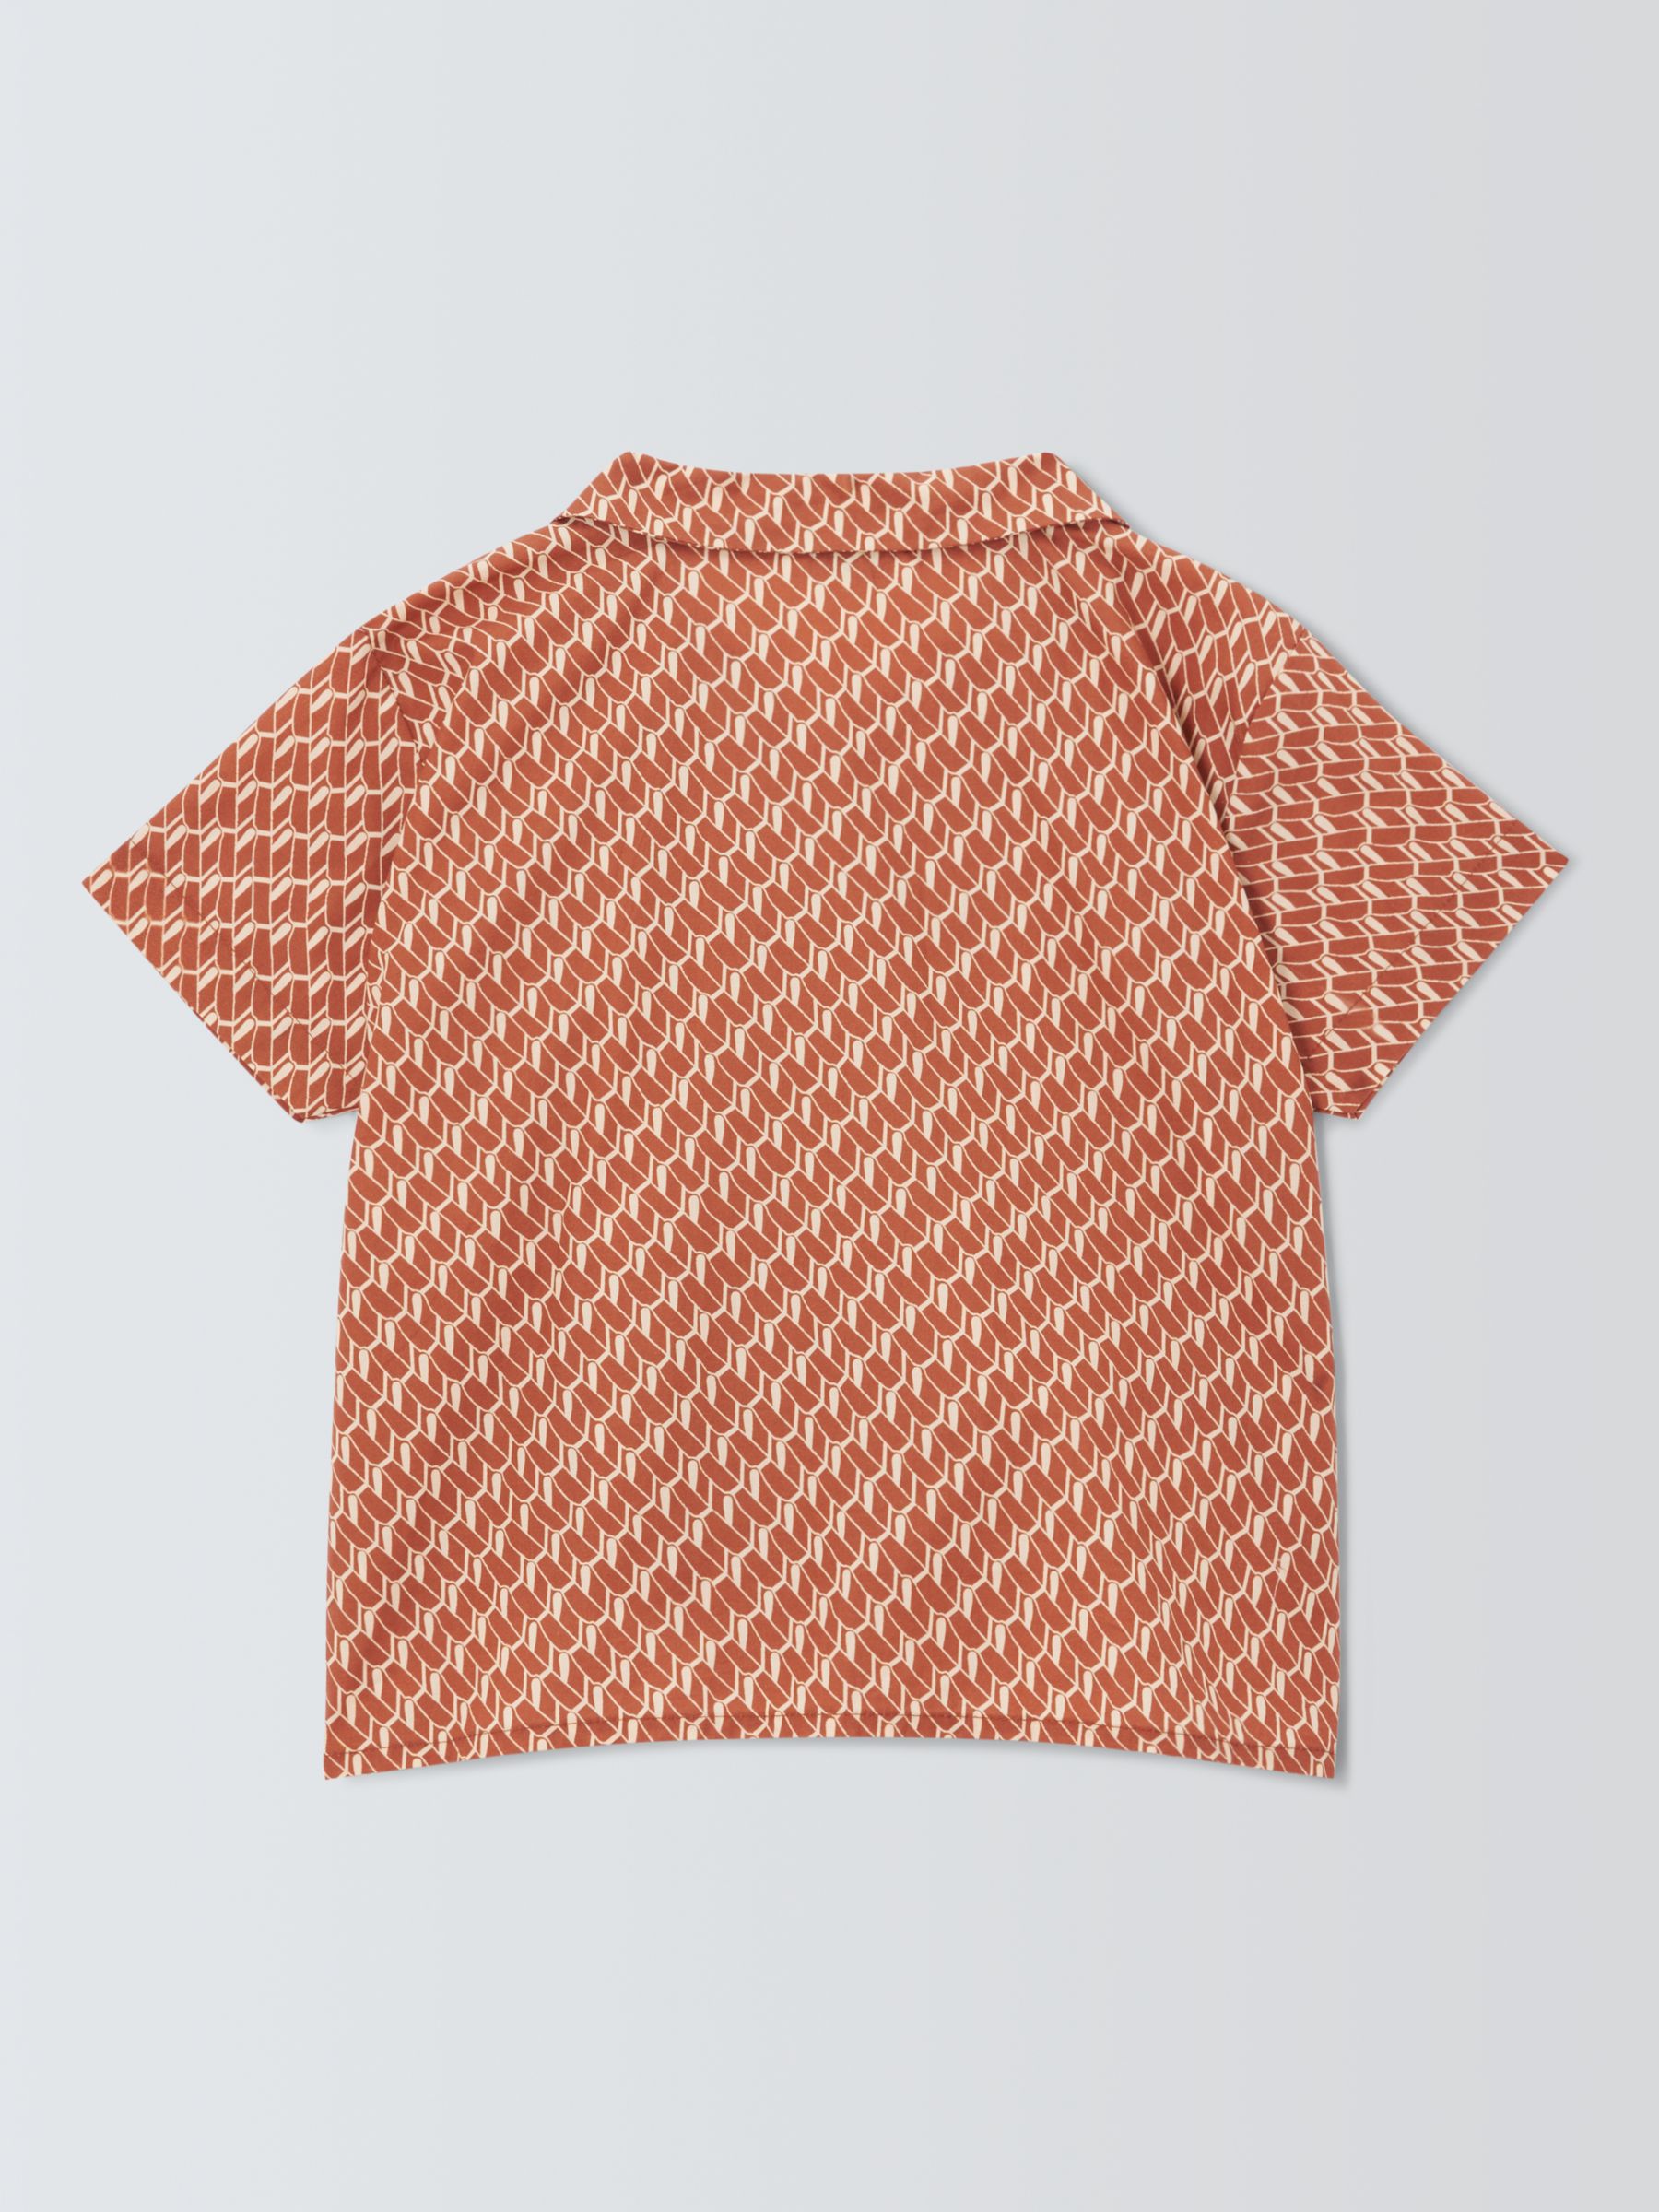 Buy Caramel Kids' Bamboo Geometric Shirt, Orange Online at johnlewis.com